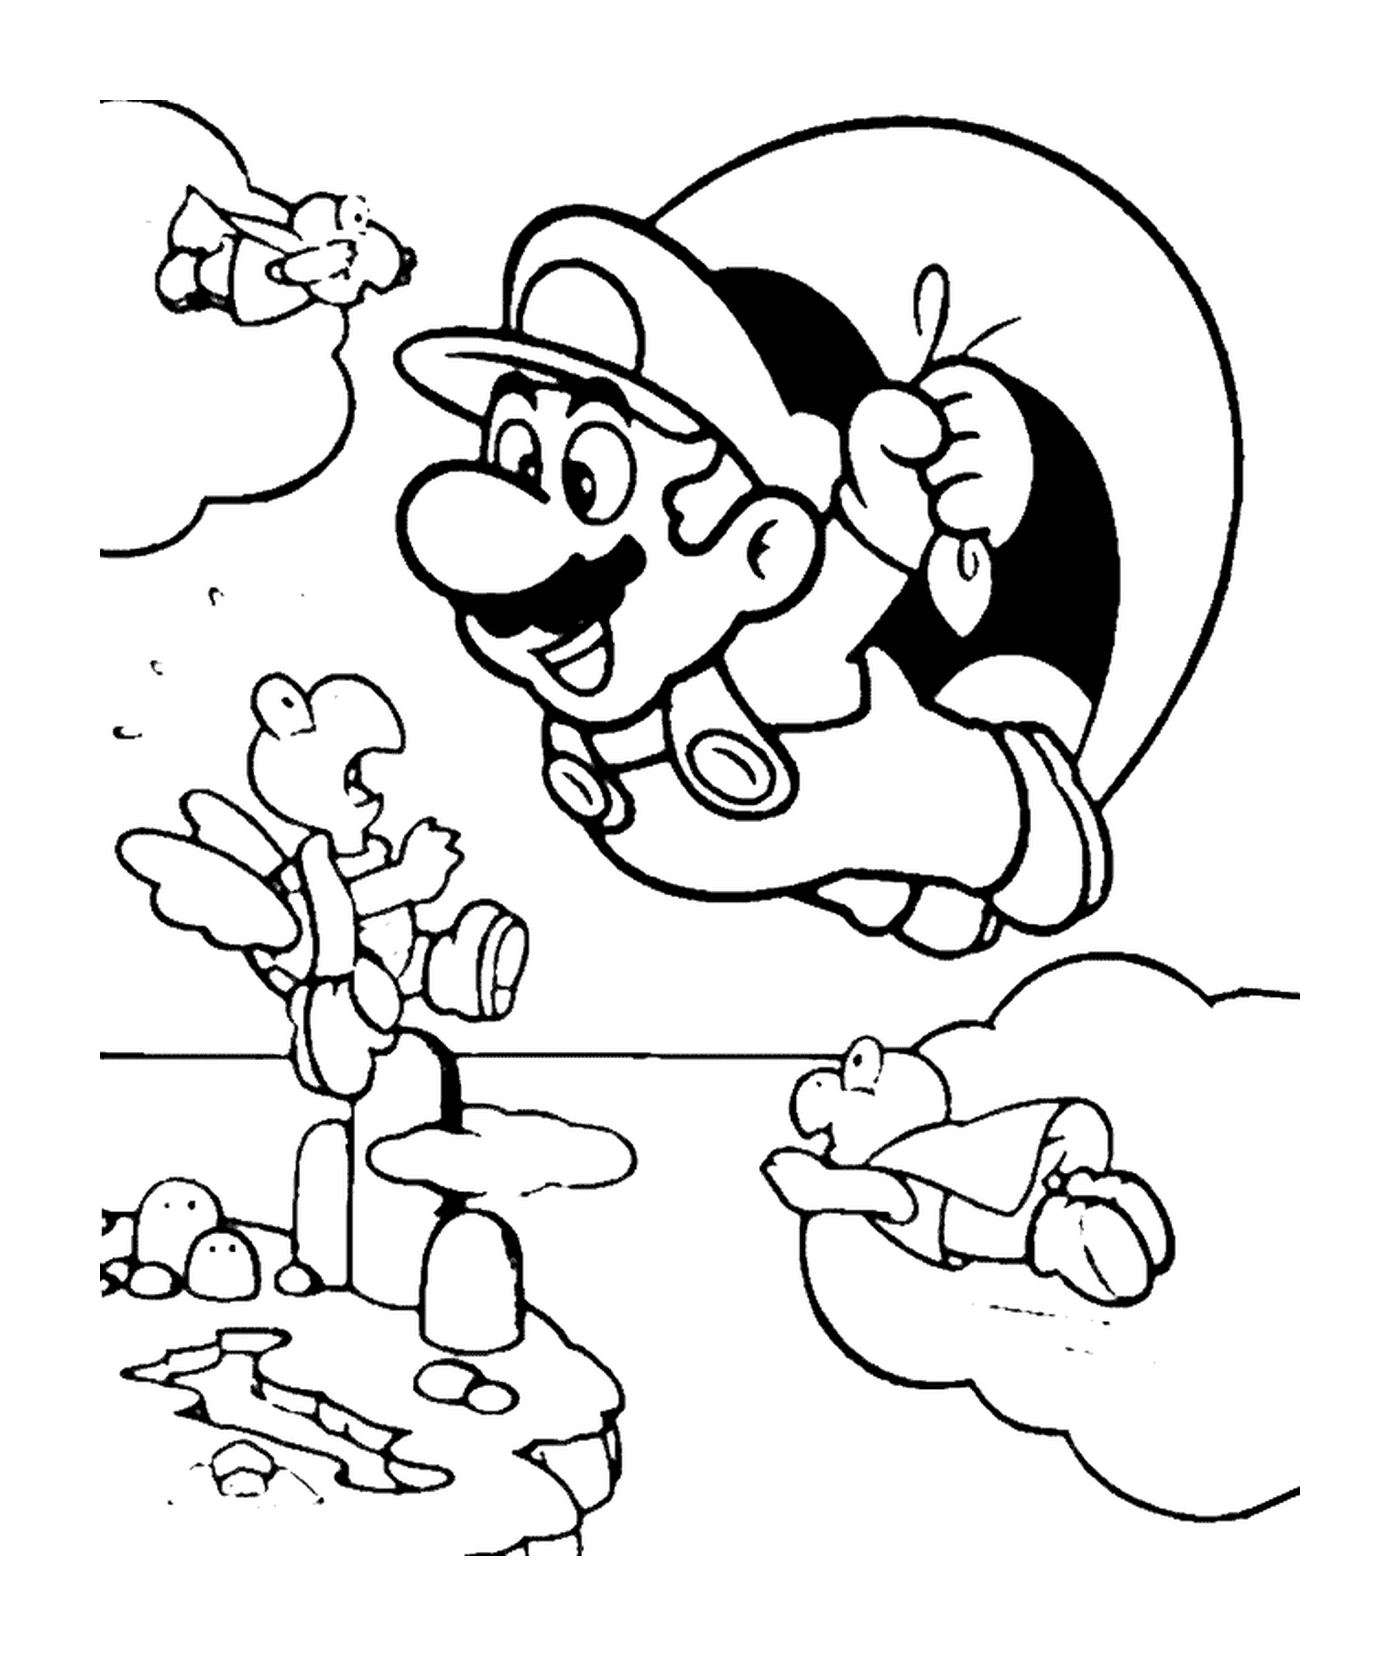  Mario fliegt mit einem Fallschirm 